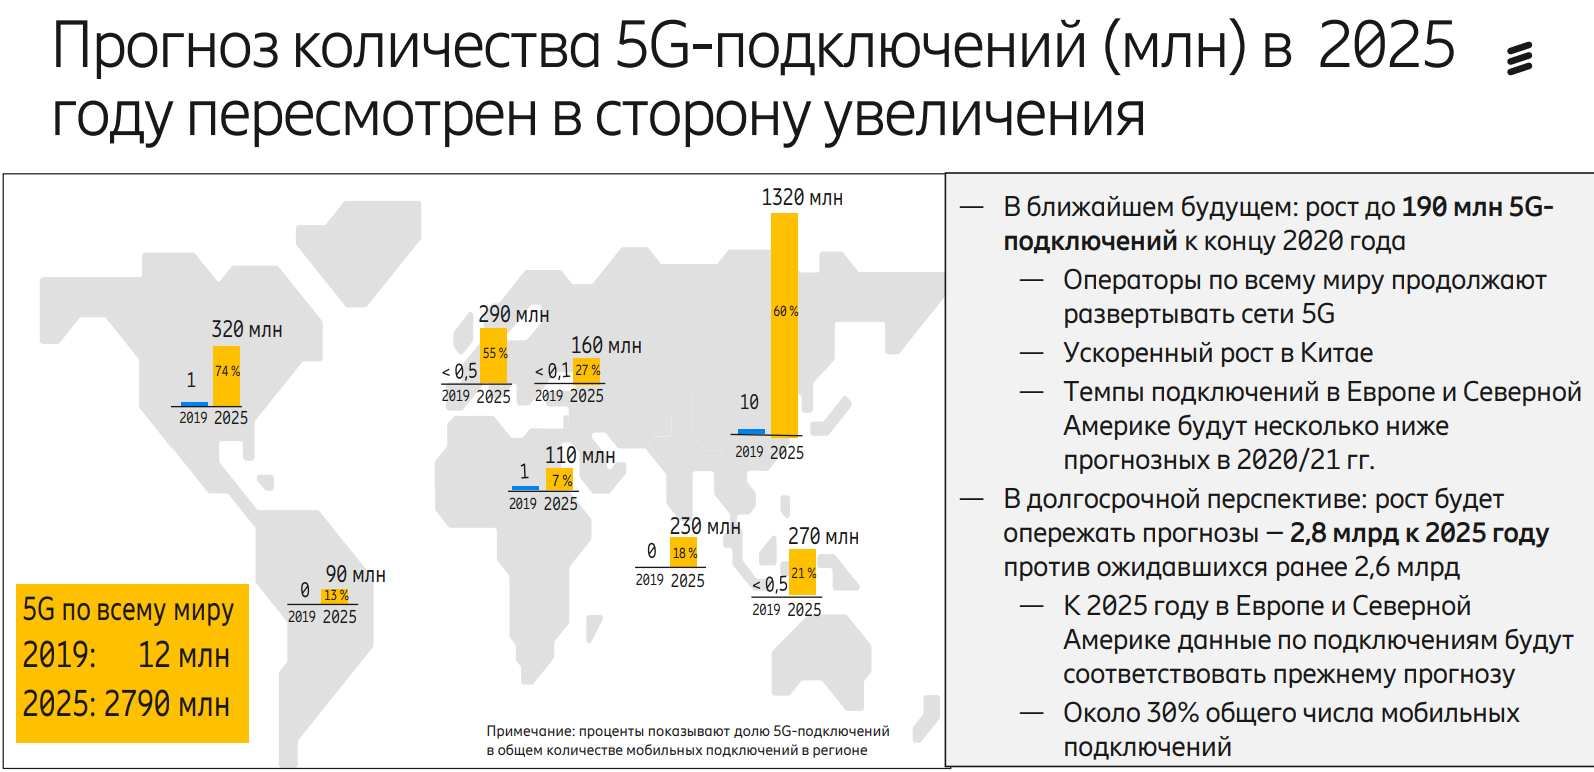 Погода 2025 год. 5g в мире. Развертывание 5 g в мире. Зона покрытия 5g в мире. Перспективы развития 5 g в России.